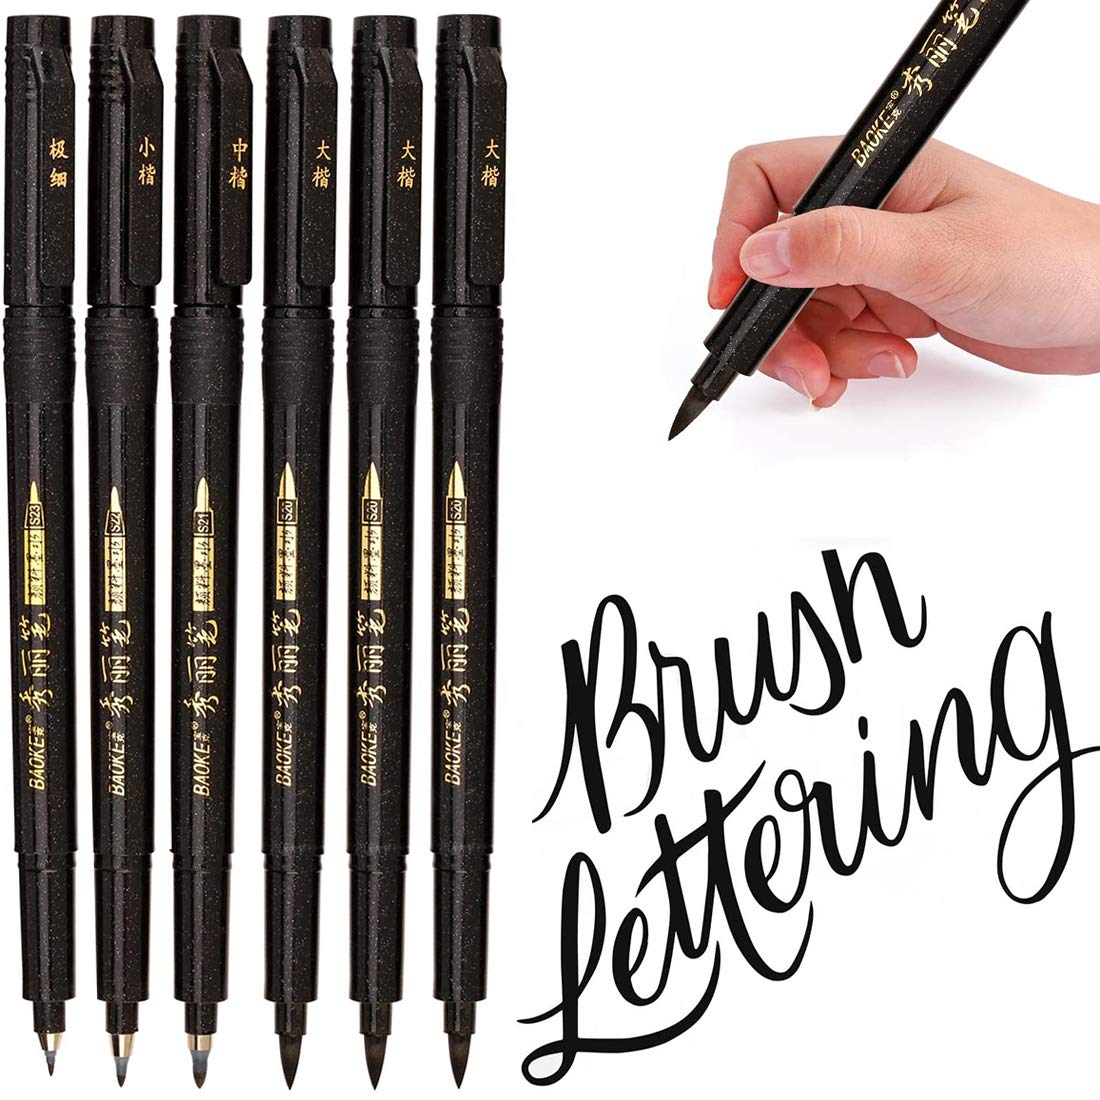 10 Best Brush Pens For Calligraphy Beginners 